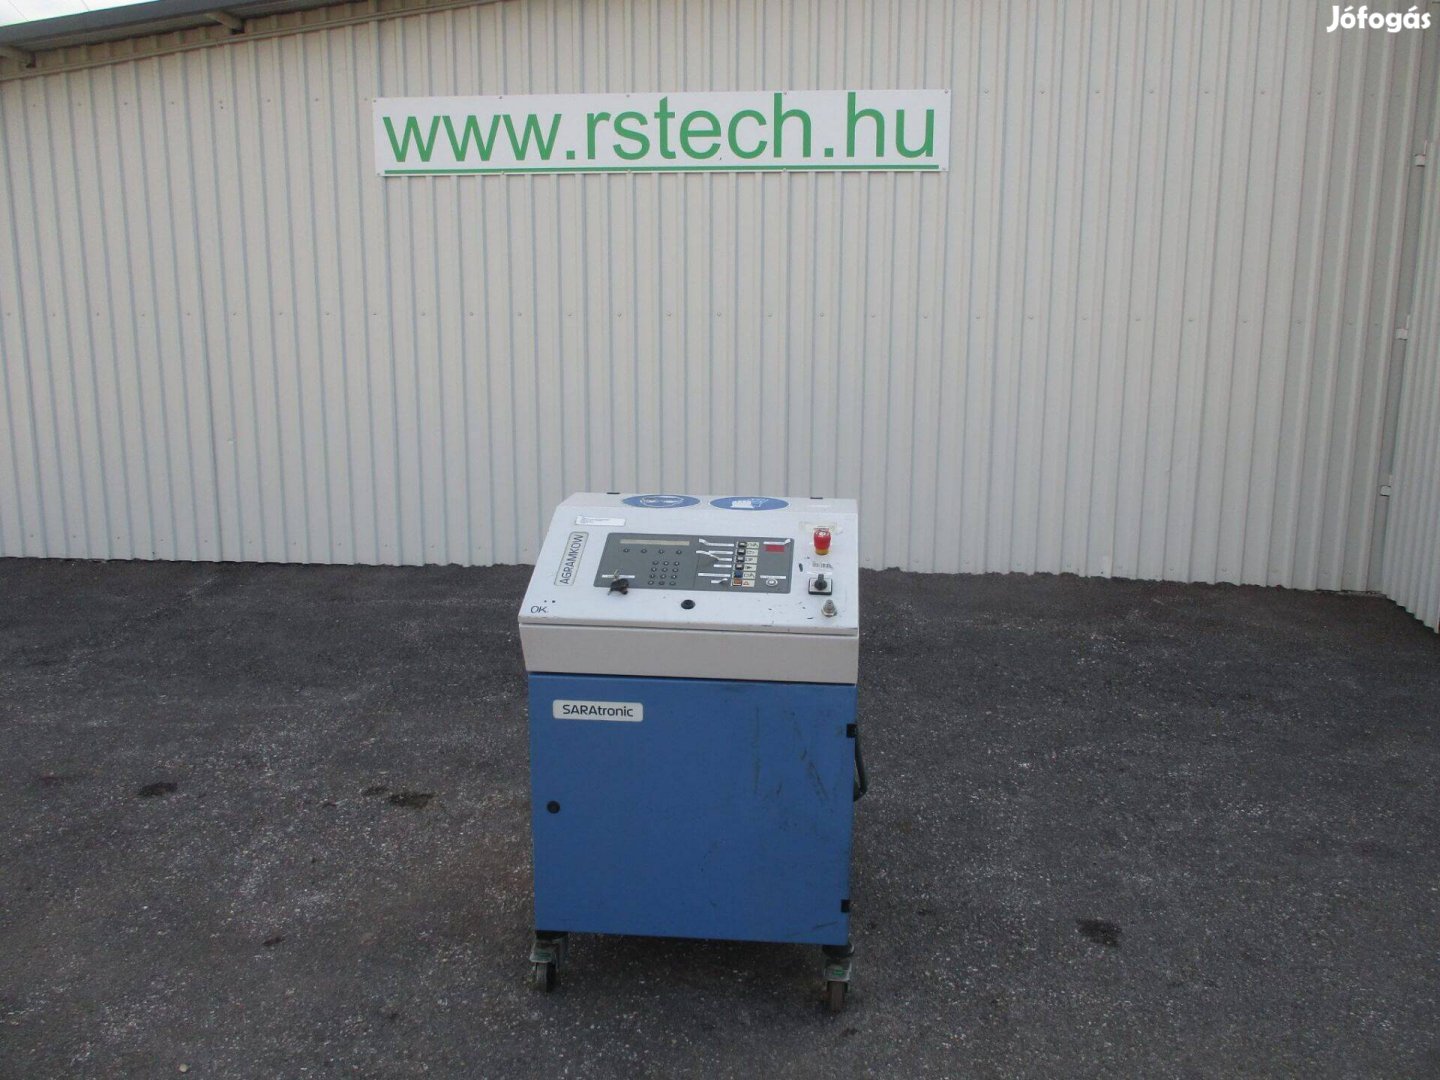 Klíma hűtőközeg töltőgép Klímatöltő készülék Agramkov 134a (2709)